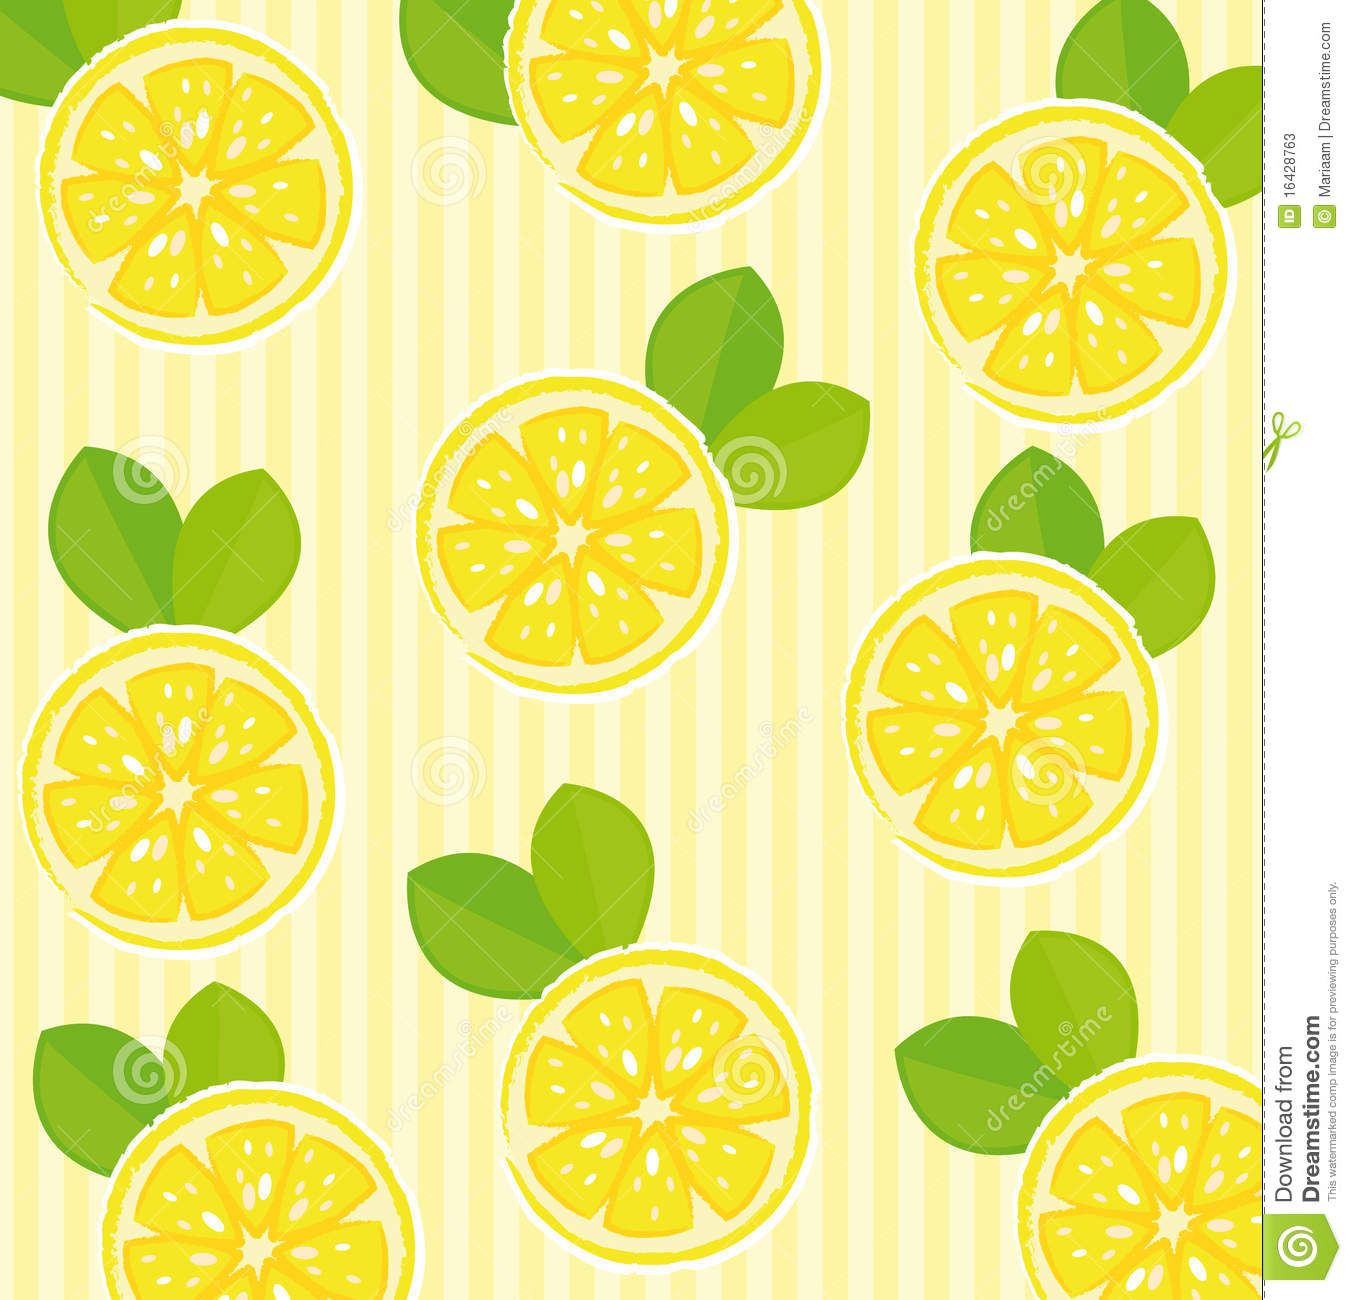 Lemon Pattern Wallpaper X3cb X3elemon X3c B X3e Background Stock